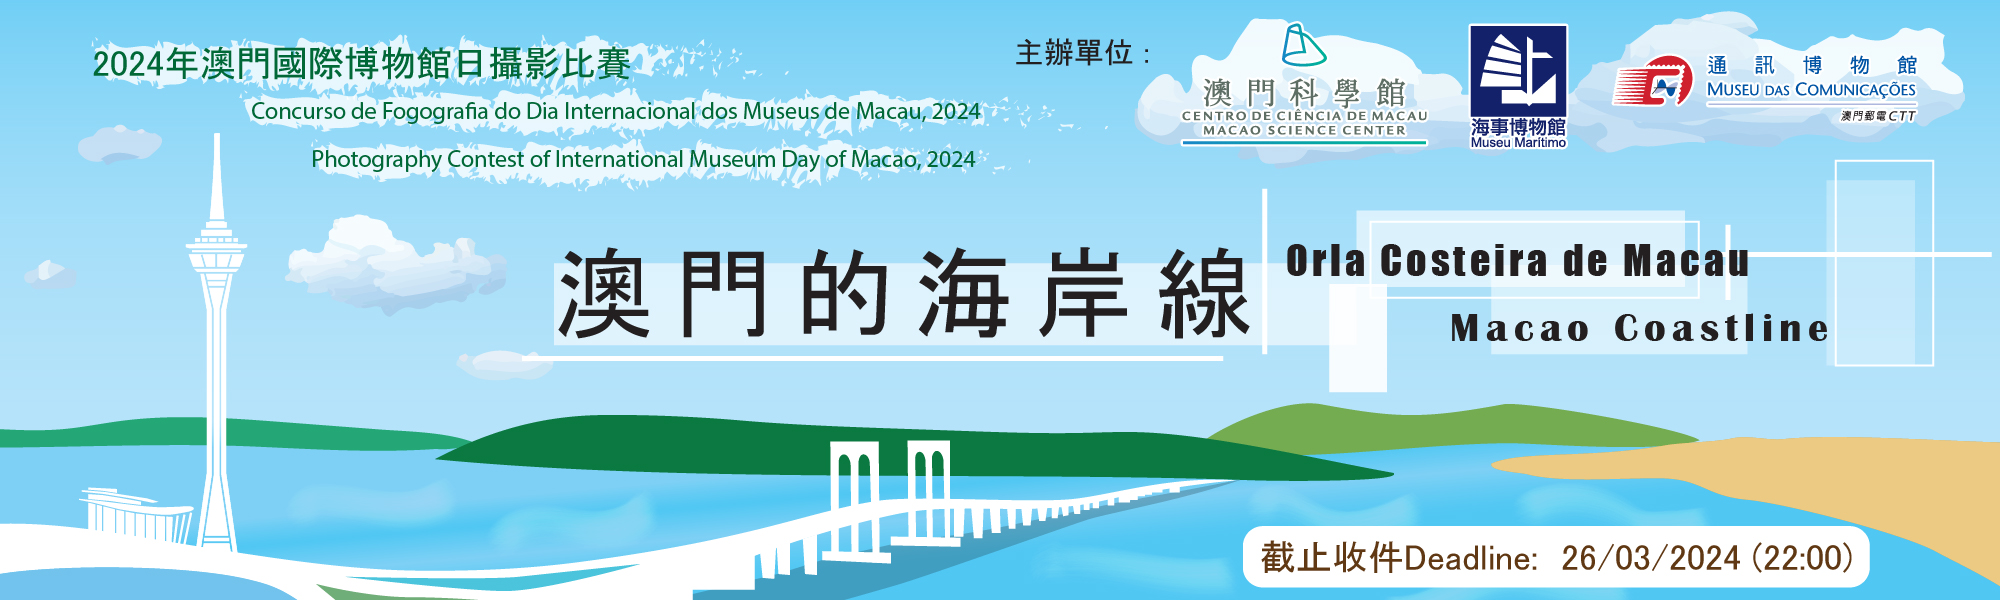 Concurso de Fotografia do Dia Internacional dos Museus de Macau, 2024